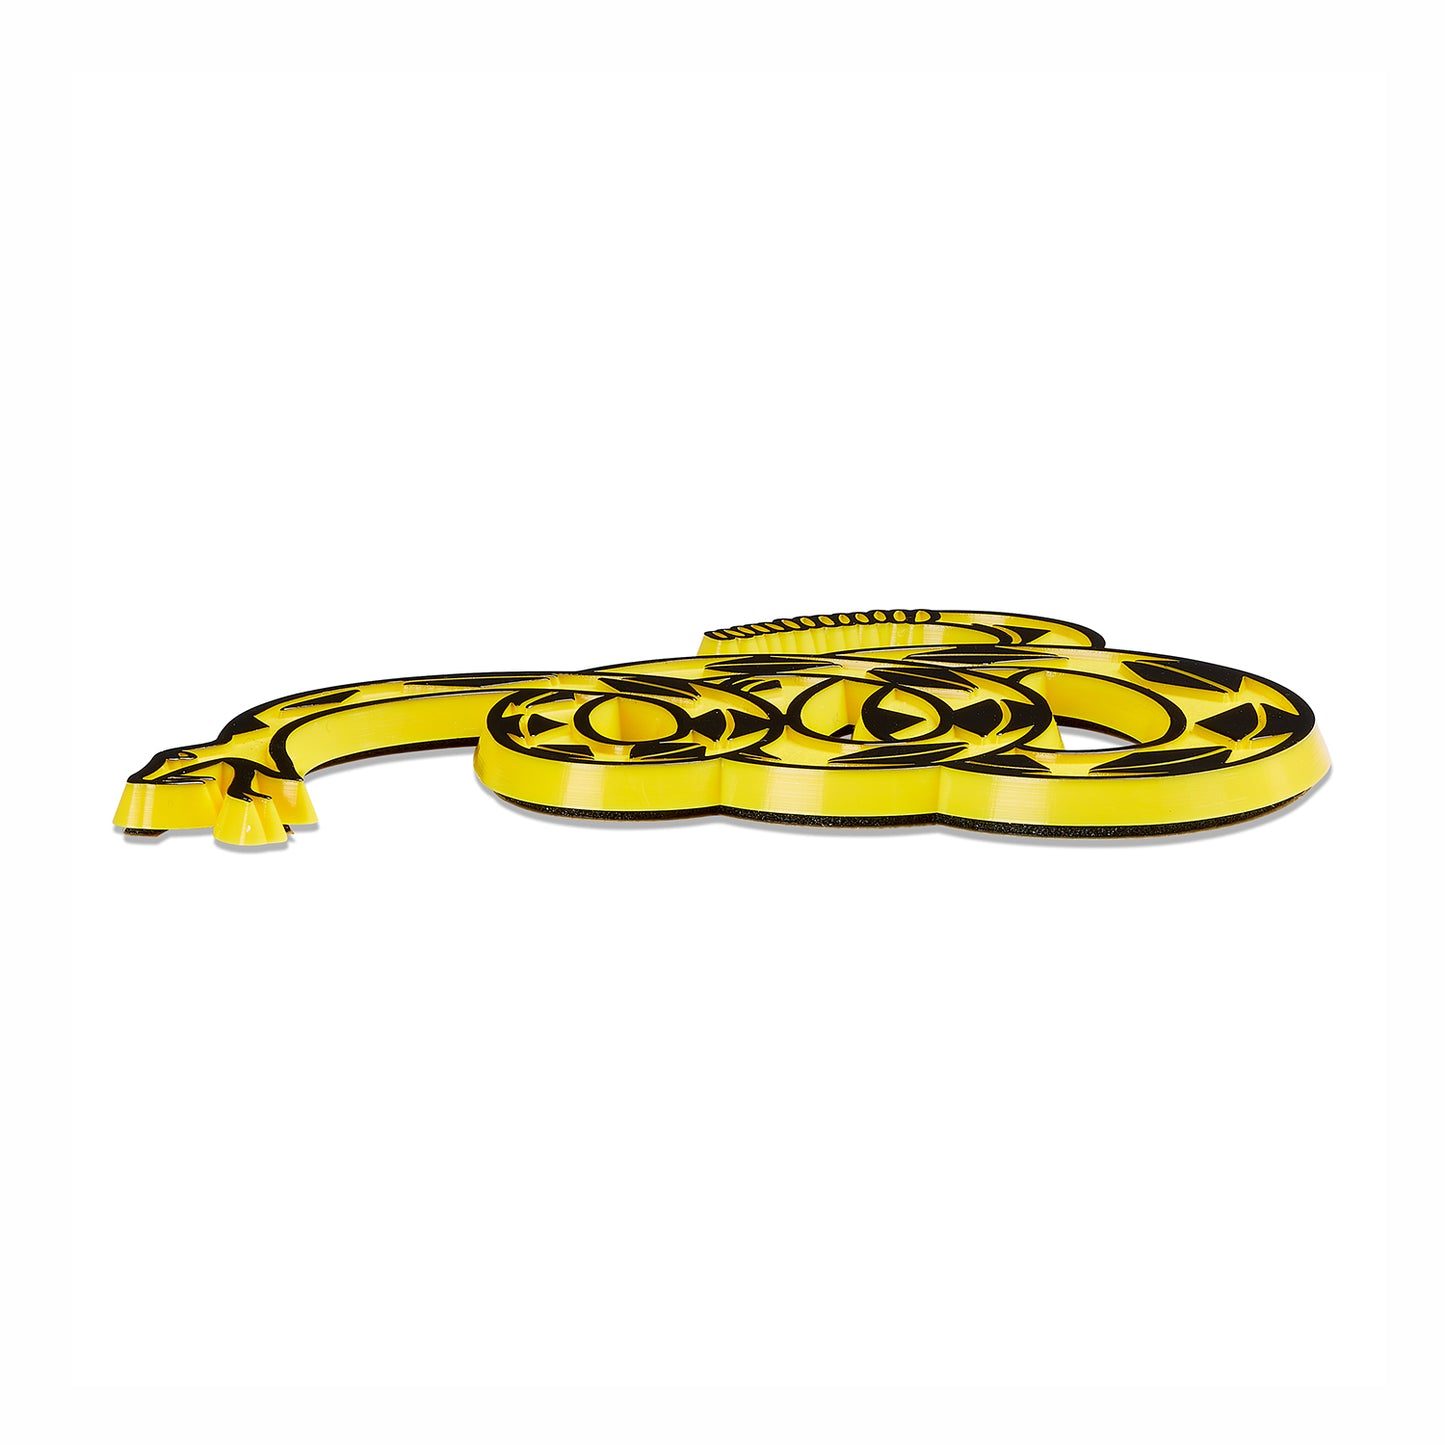 Gadsden "Don't Tread On Me" Rattlesnake Car Emblem (Yellow/Black)